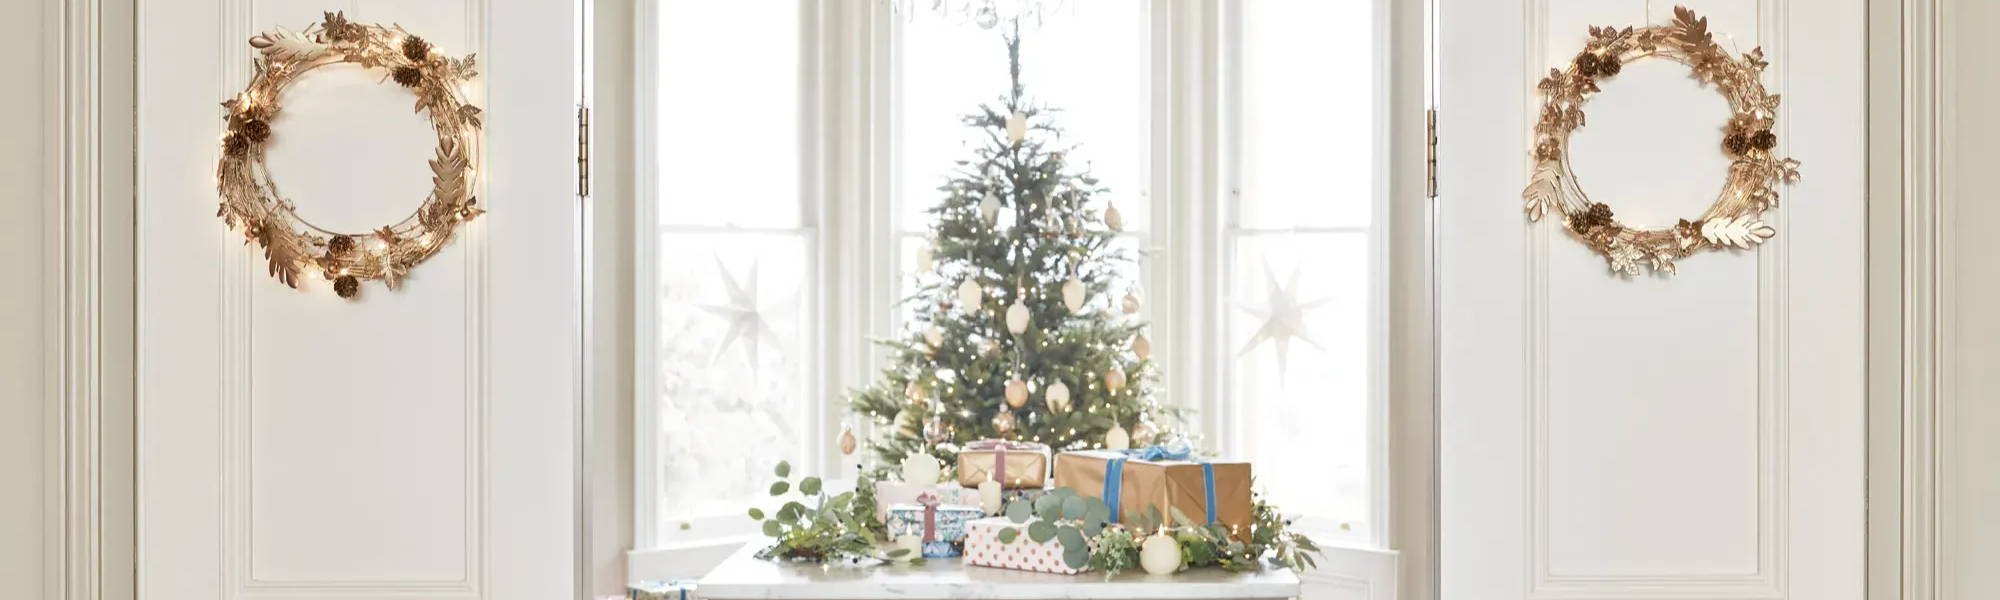 Mit goldenen Kränzen  dekorierte, geöffnete Flügeltür, dahinter ein geschmückter Weihnachtsbaum und auf einem Tisch platzierte Geschenke und TruGlow LED Kerzen